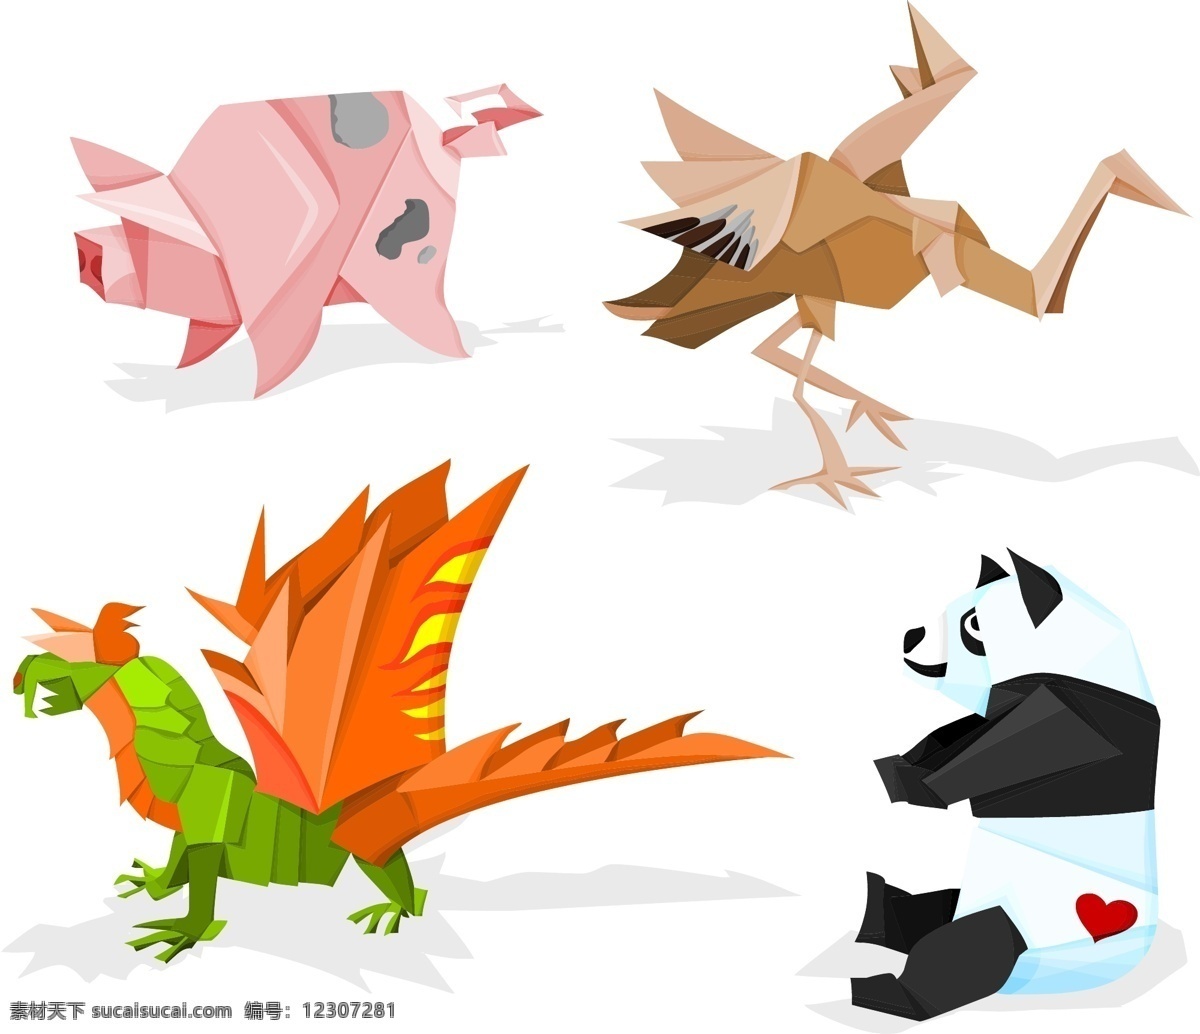 各种 折纸 动物 矢量 材料 向量的动物 矢量图 矢量人物